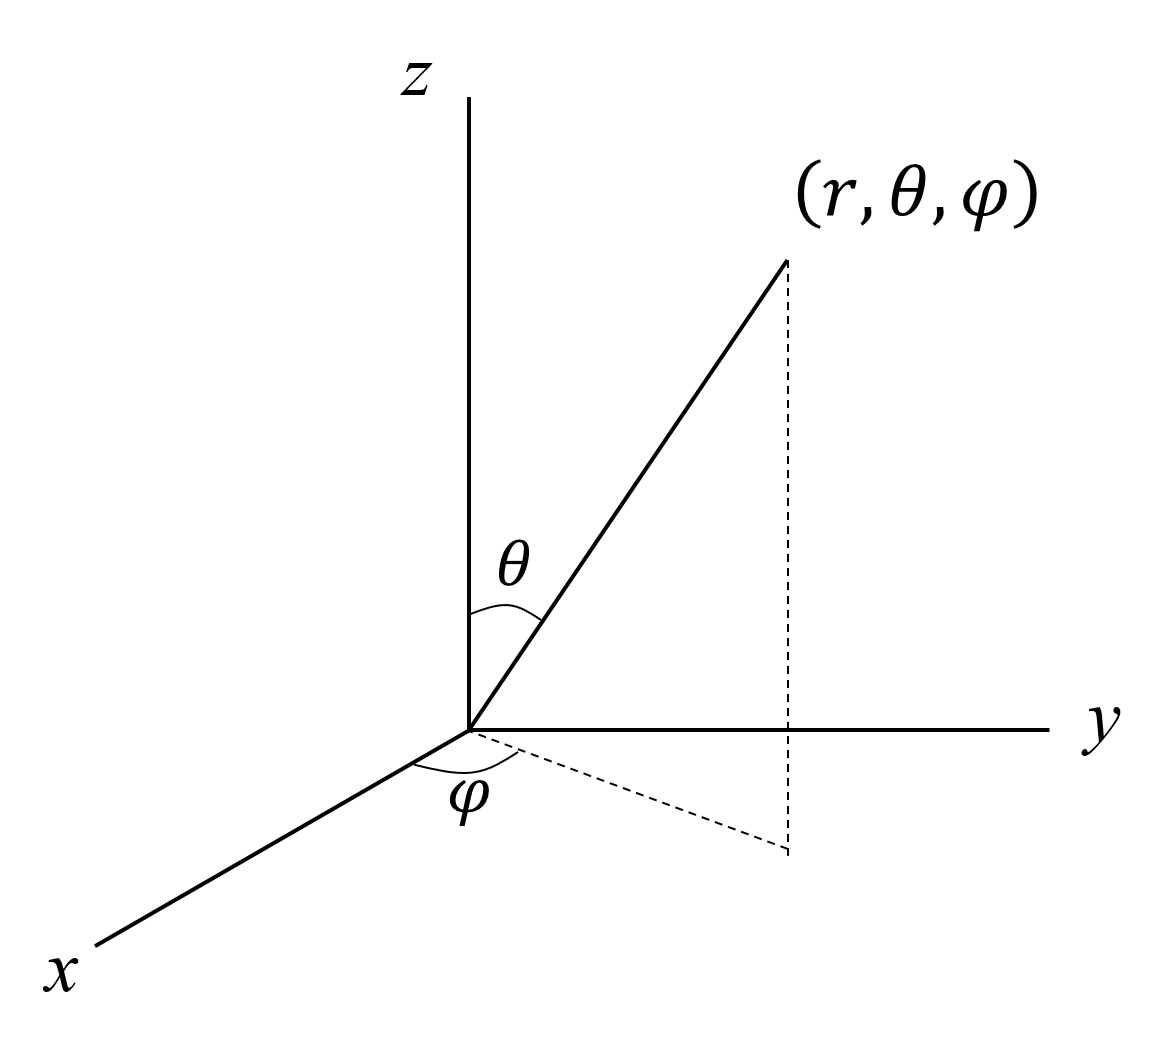 極座標と直交座標の変換公式（3次元）の導出